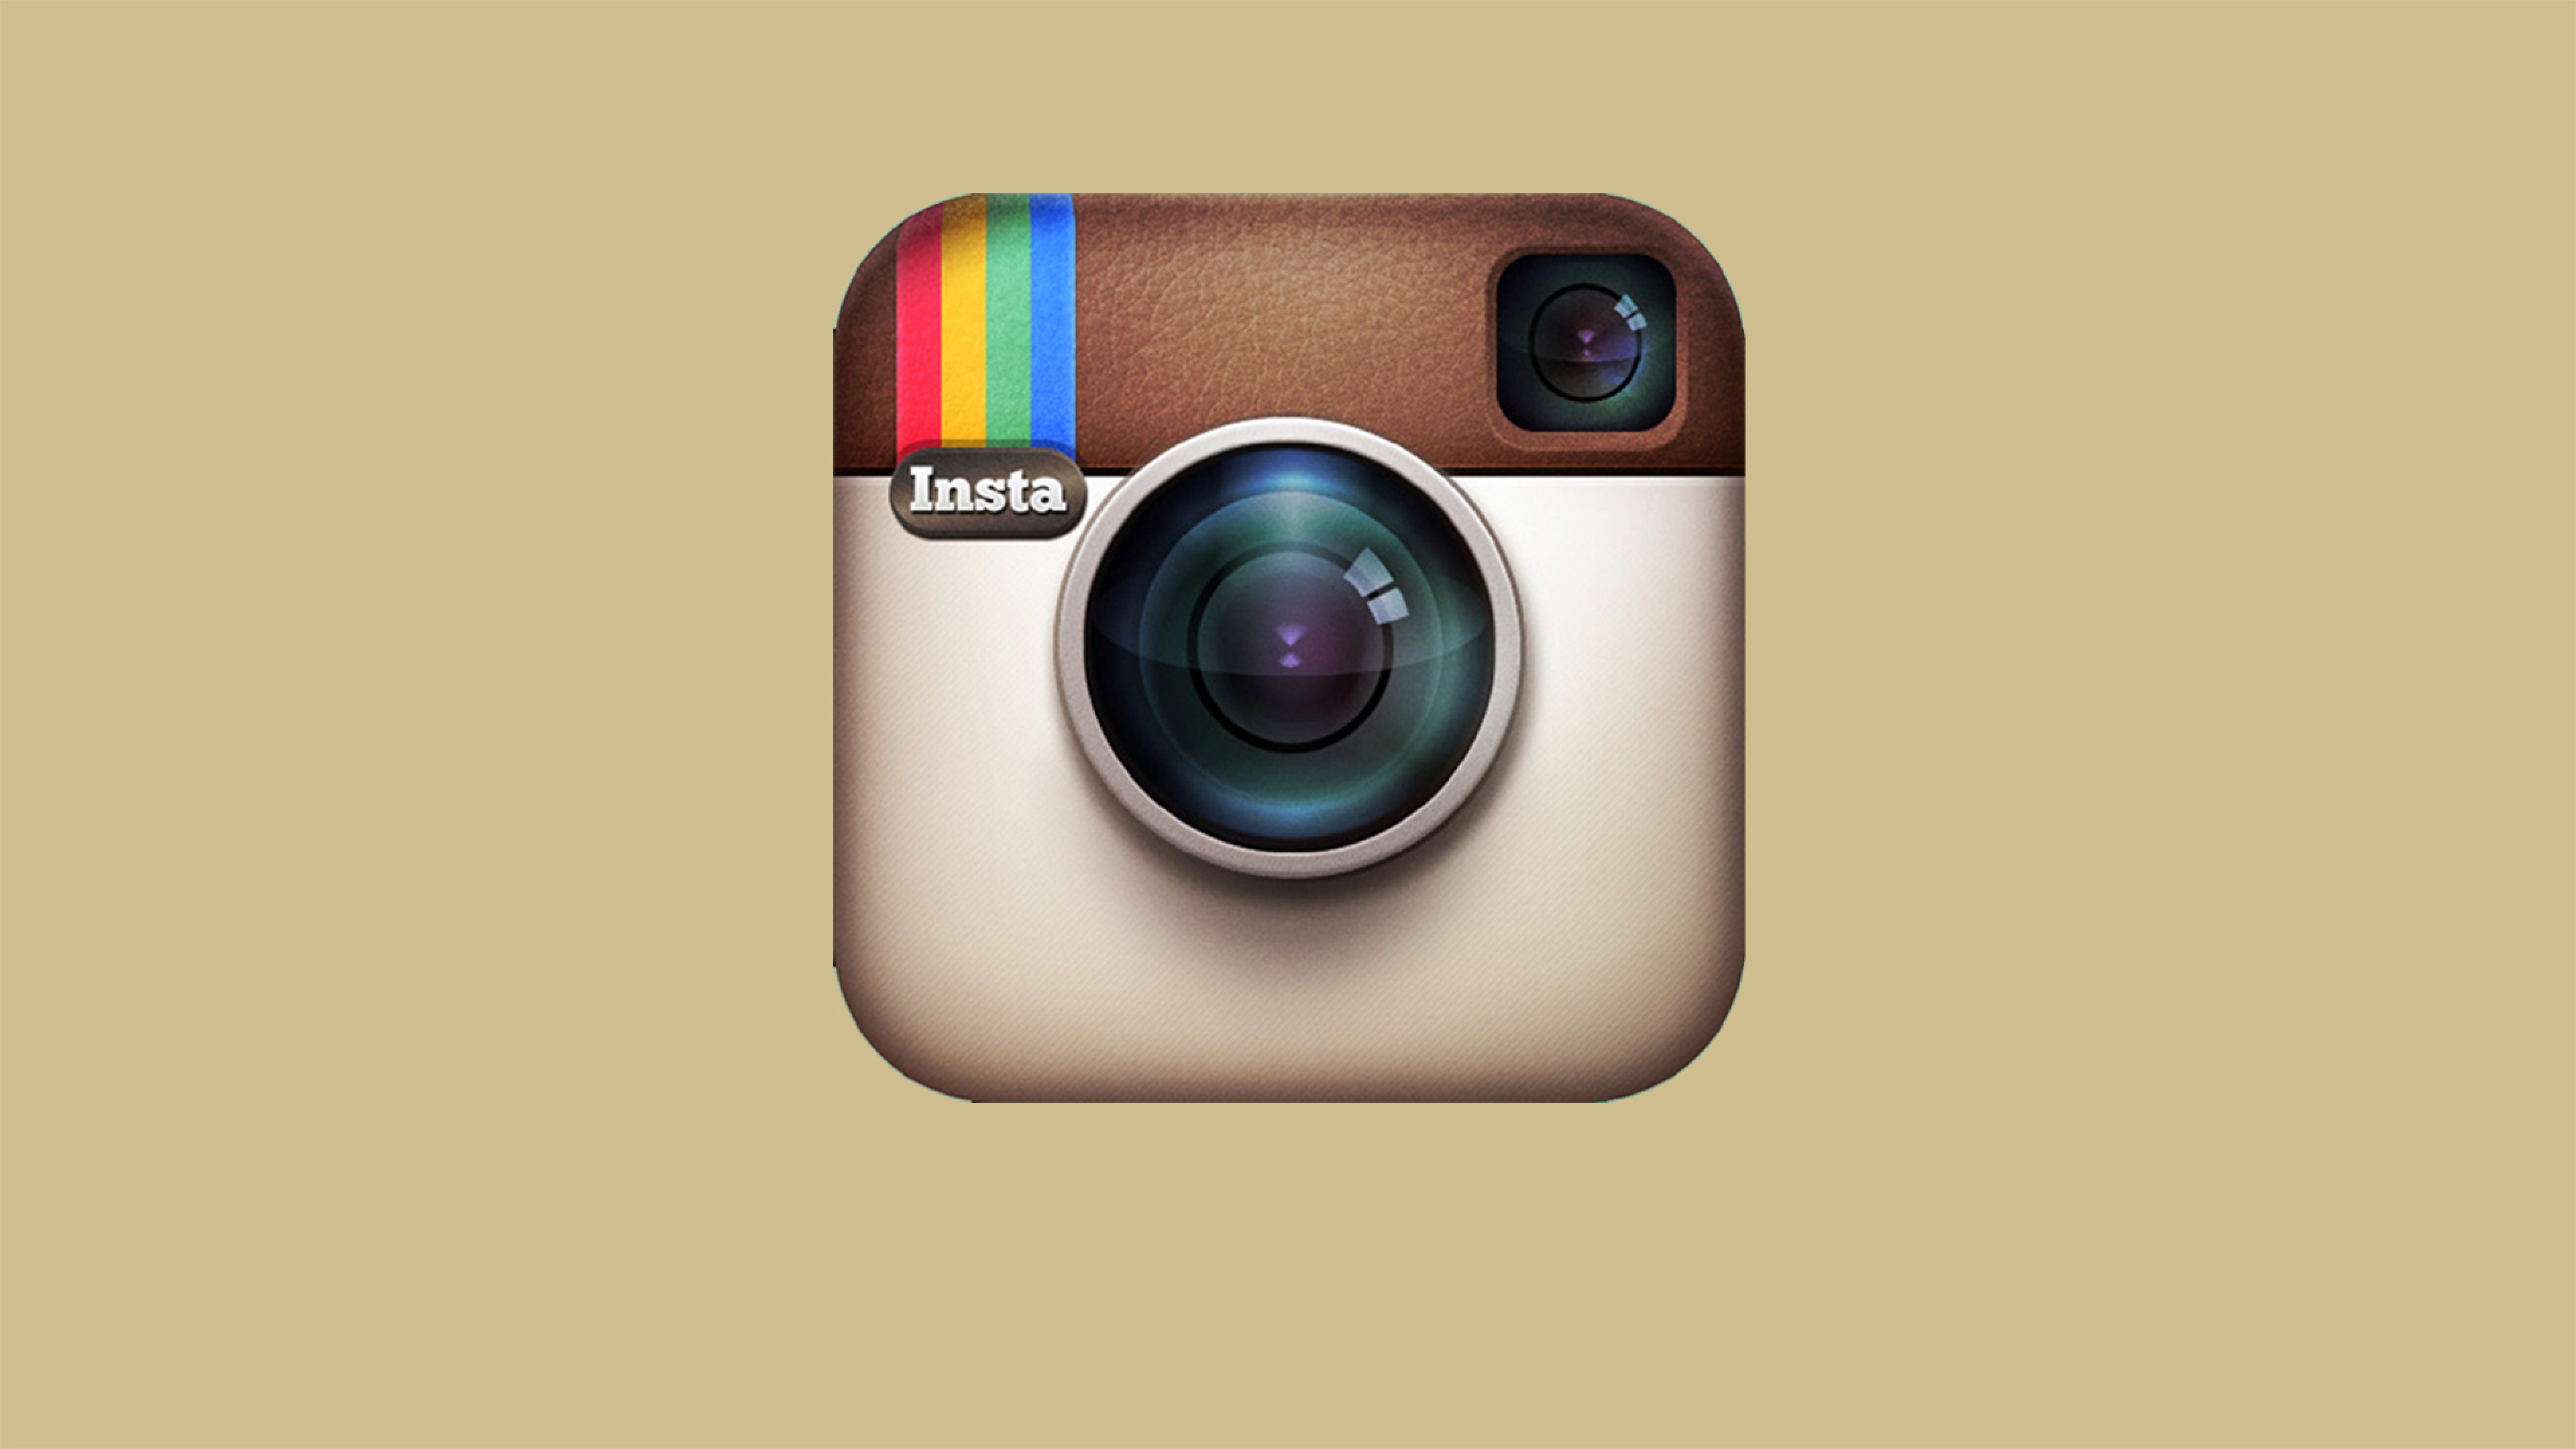 Tự hào giới thiệu bộ sưu tập hình nền Instagram 4K đẹp nhất. Với độ phân giải cao 3840x2160, các bức ảnh đượm màu sắc rực rỡ sẽ làm cho tài khoản Instagram của bạn trở nên nổi bật hơn bao giờ hết.